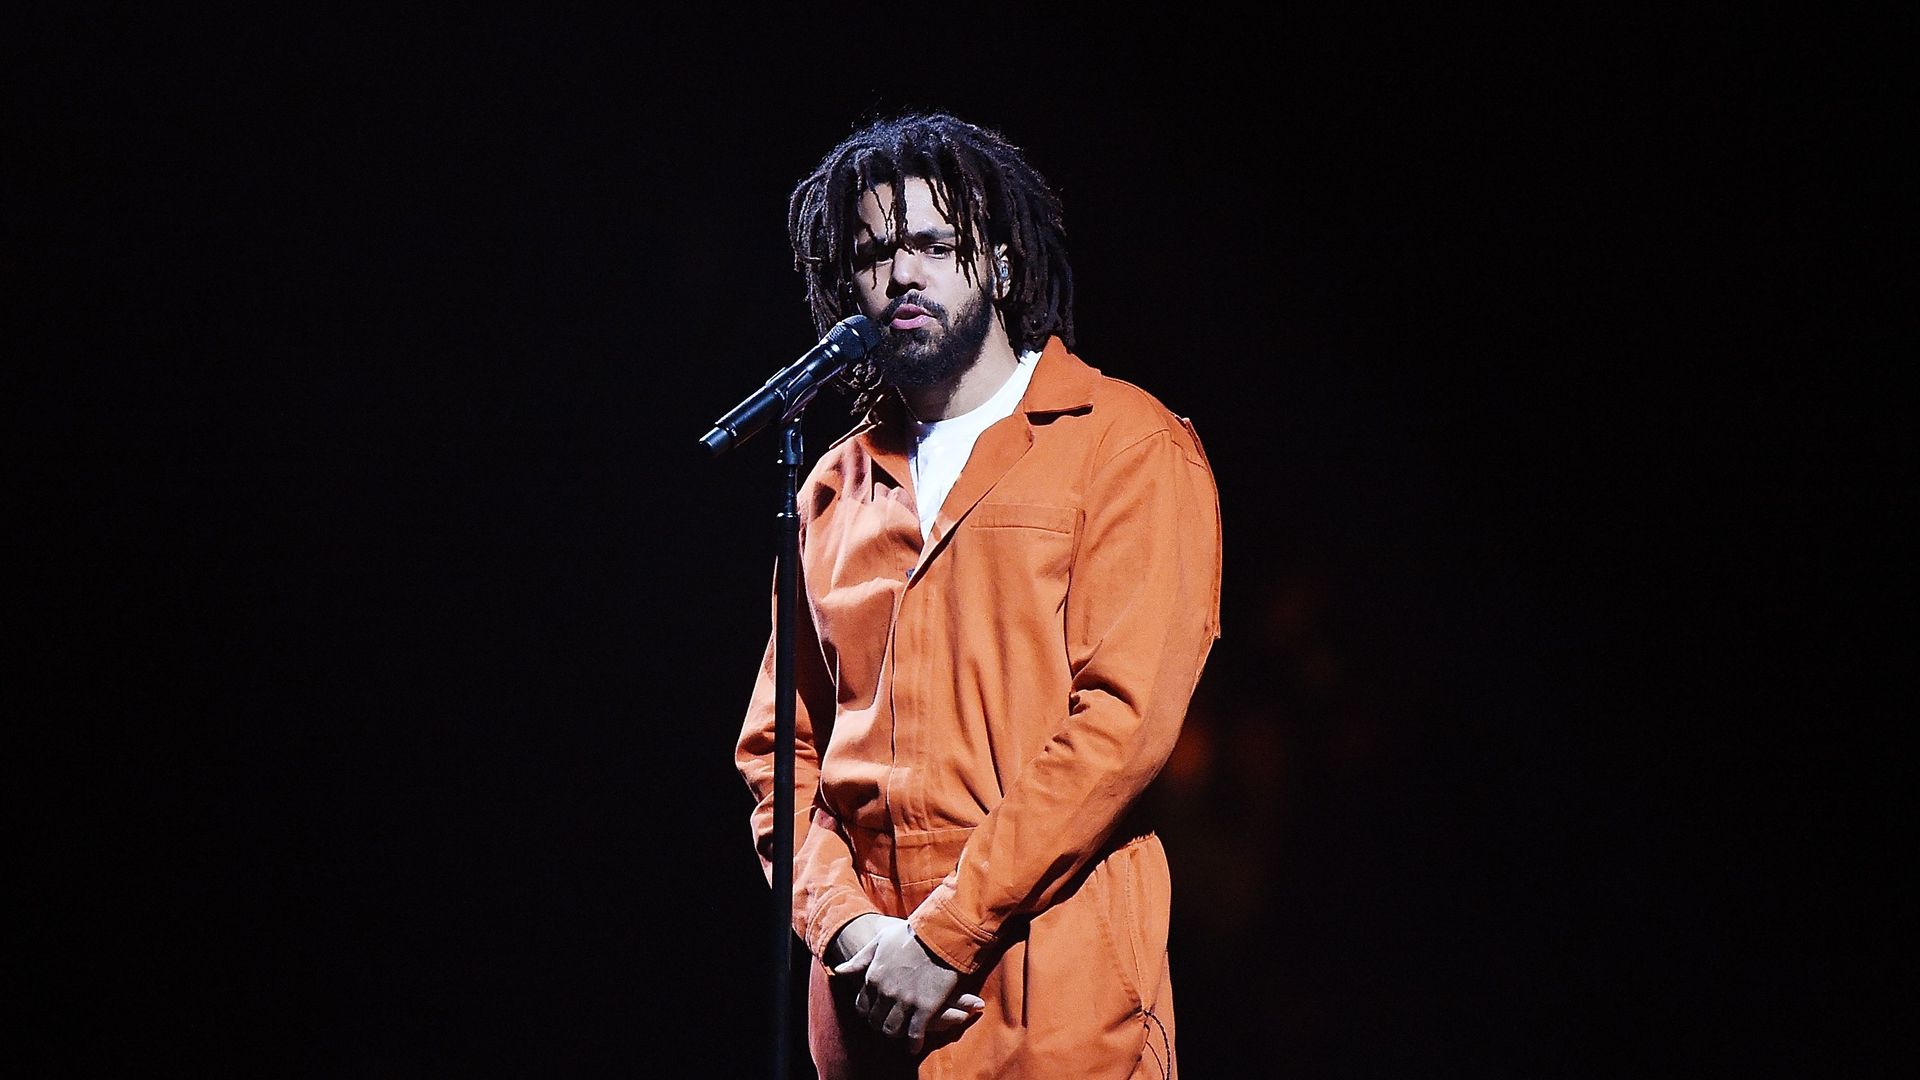 Avec son rap anti-drogues, J. Cole atteint les sommets